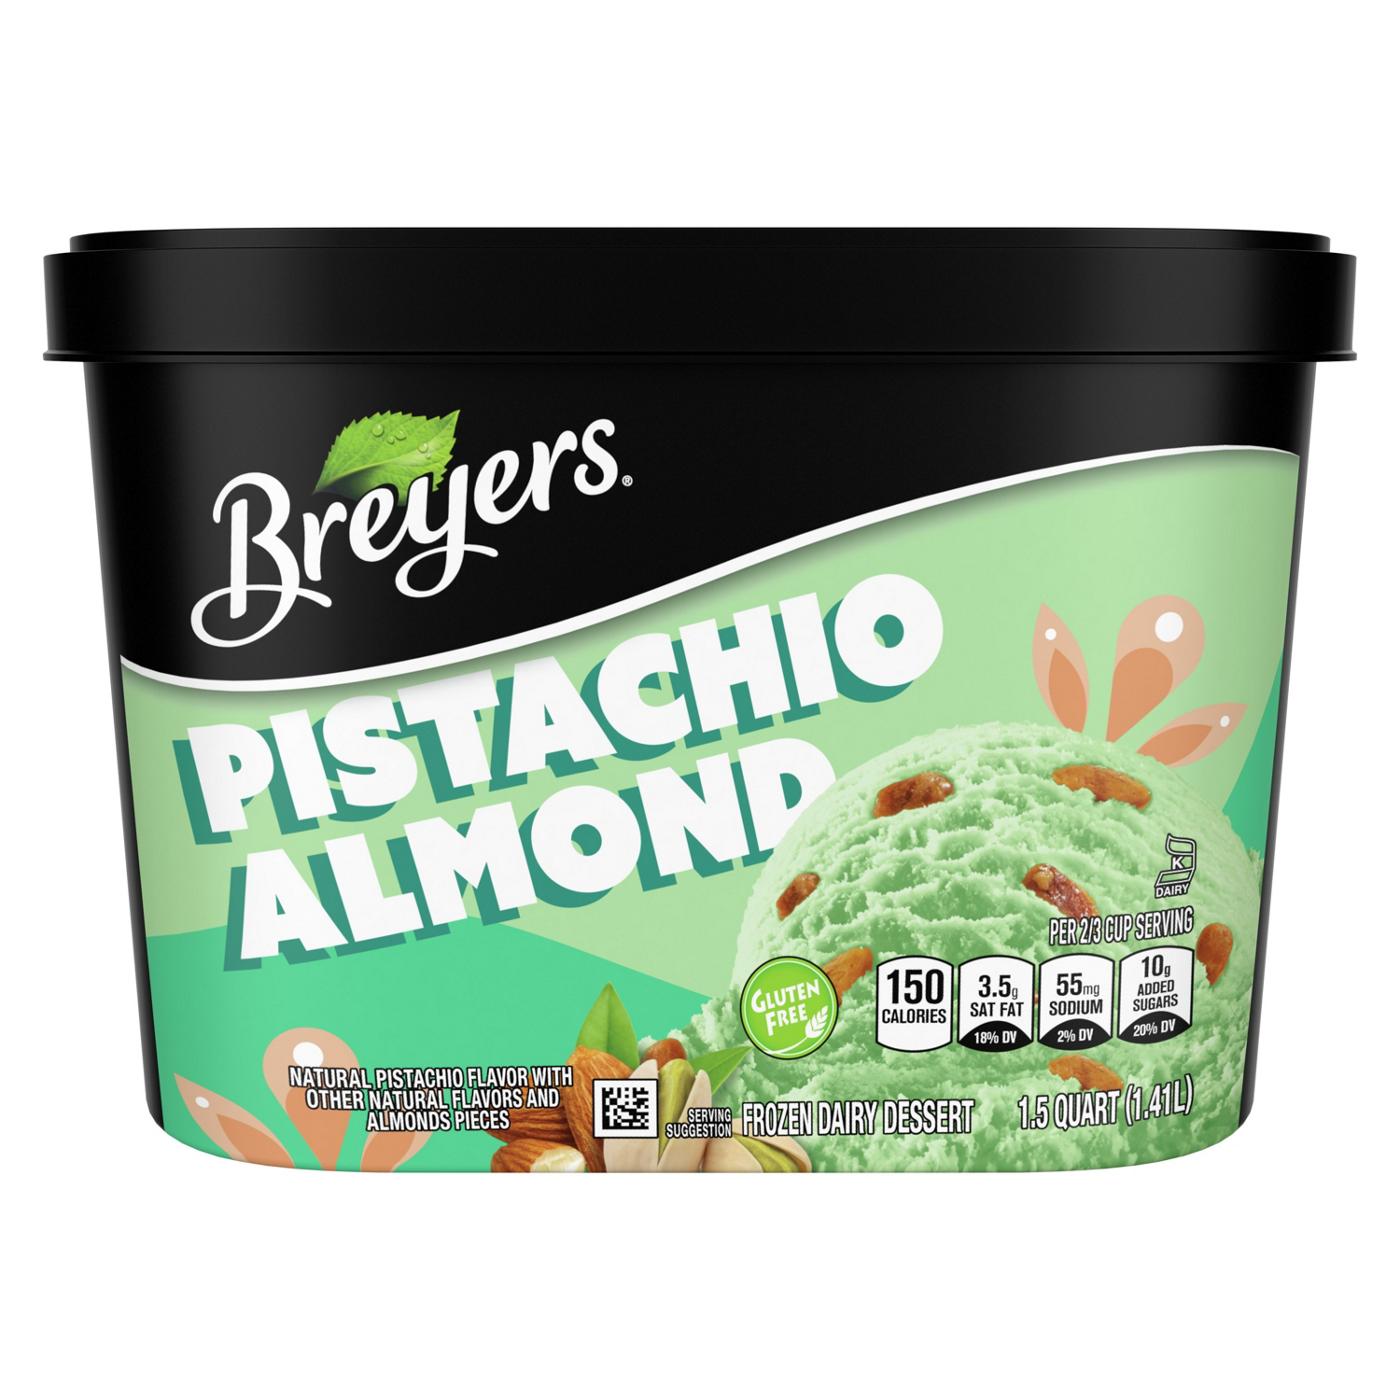 Breyers Pistachio Almond Frozen Dairy Dessert; image 1 of 6